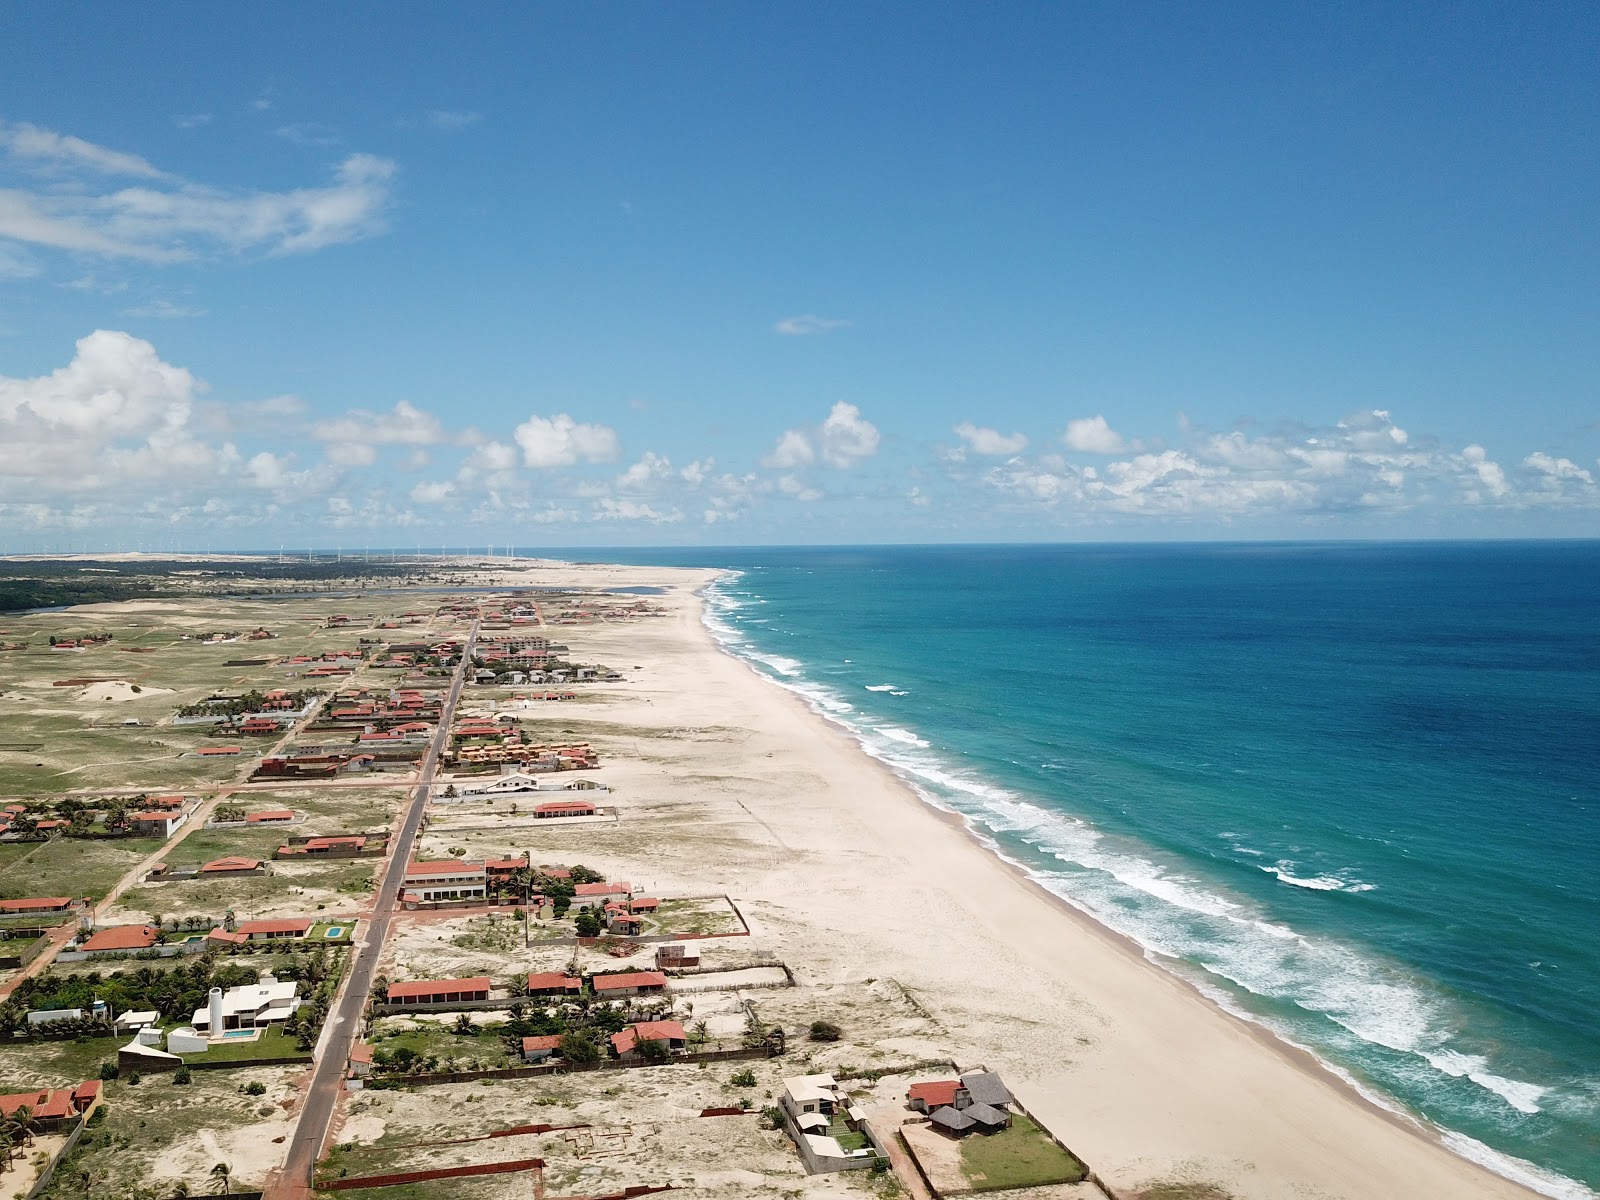 Praia do Taiba'in fotoğrafı geniş plaj ile birlikte